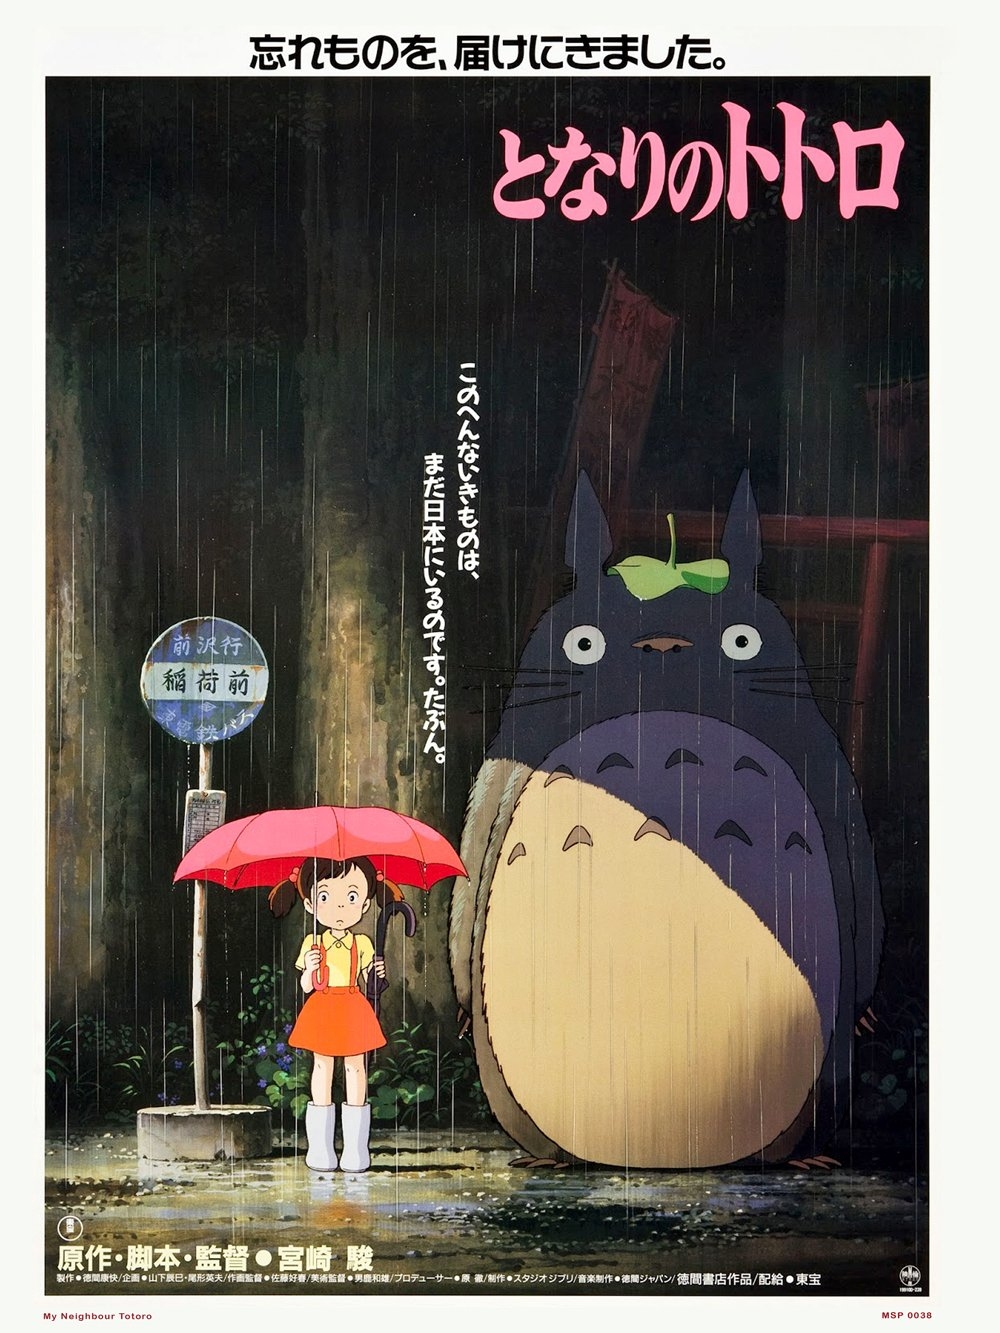 onthewall My Neighbour Totoro Studio Ghibli Poster Art Print